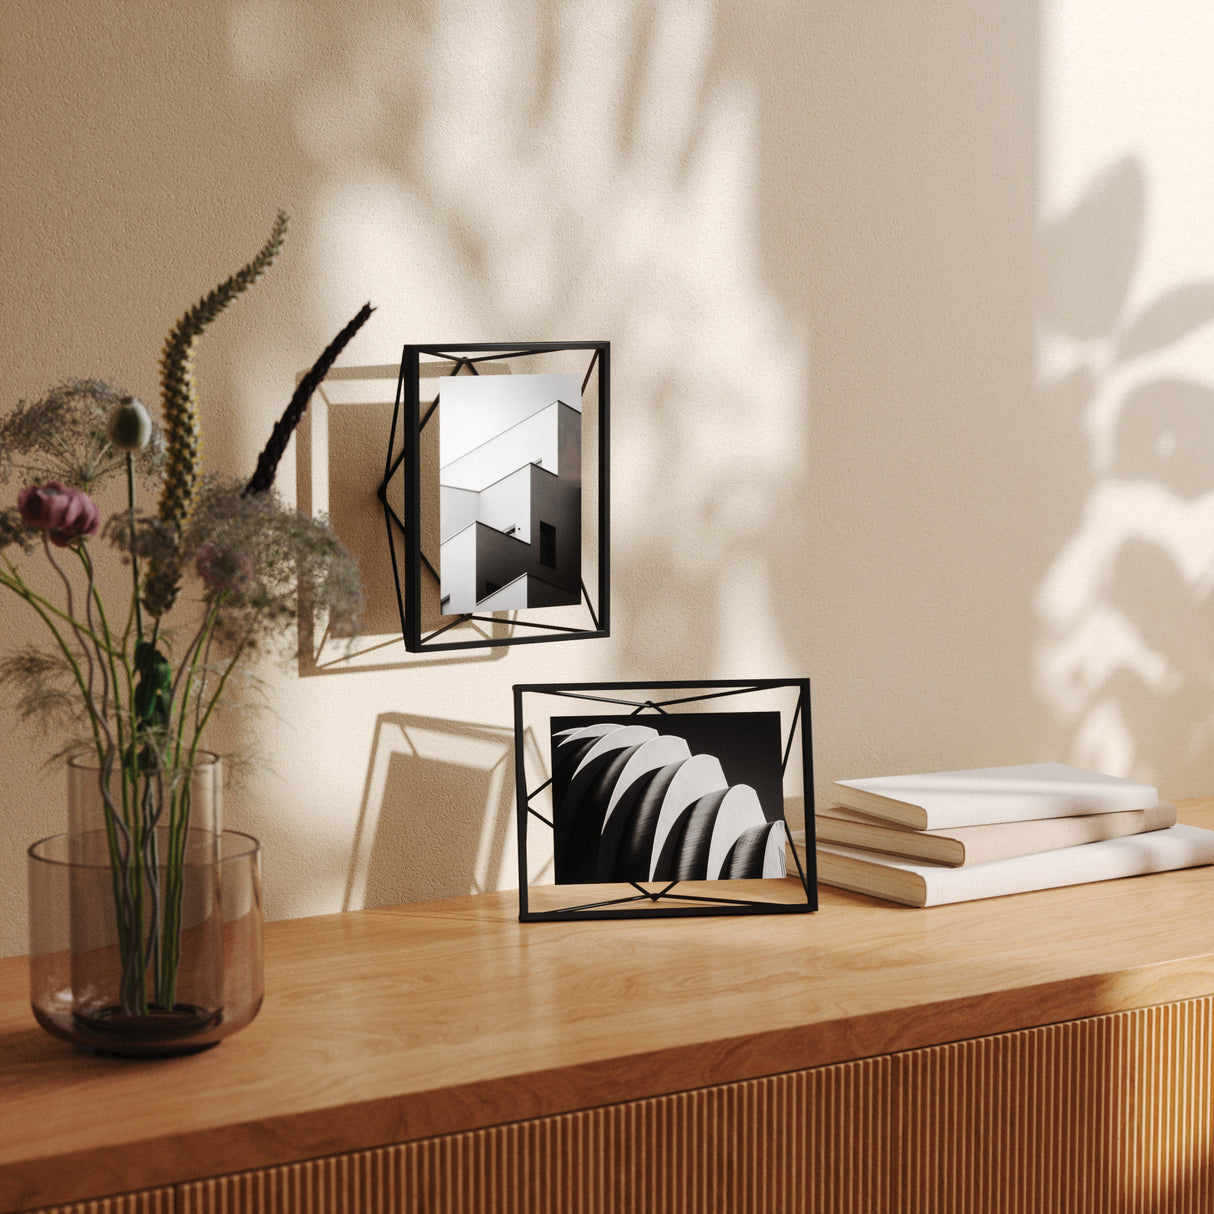 Tabletop Frames | color: Black | size: 5x7" (13x18 cm) | Hover